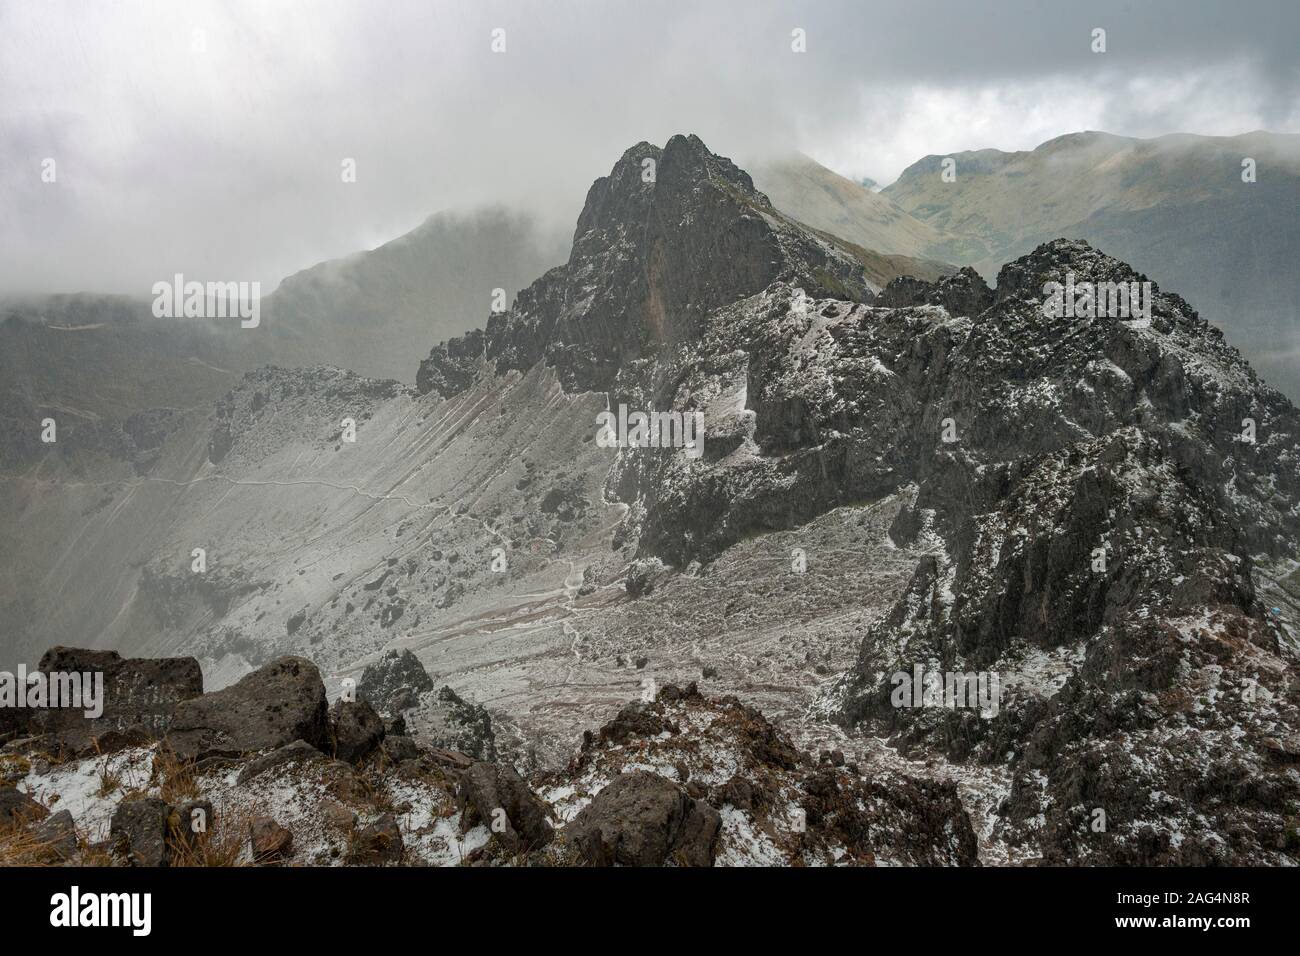 Landscape around the summit of the Rucu Pichincha volcano in Quito, Ecuador. Stock Photo